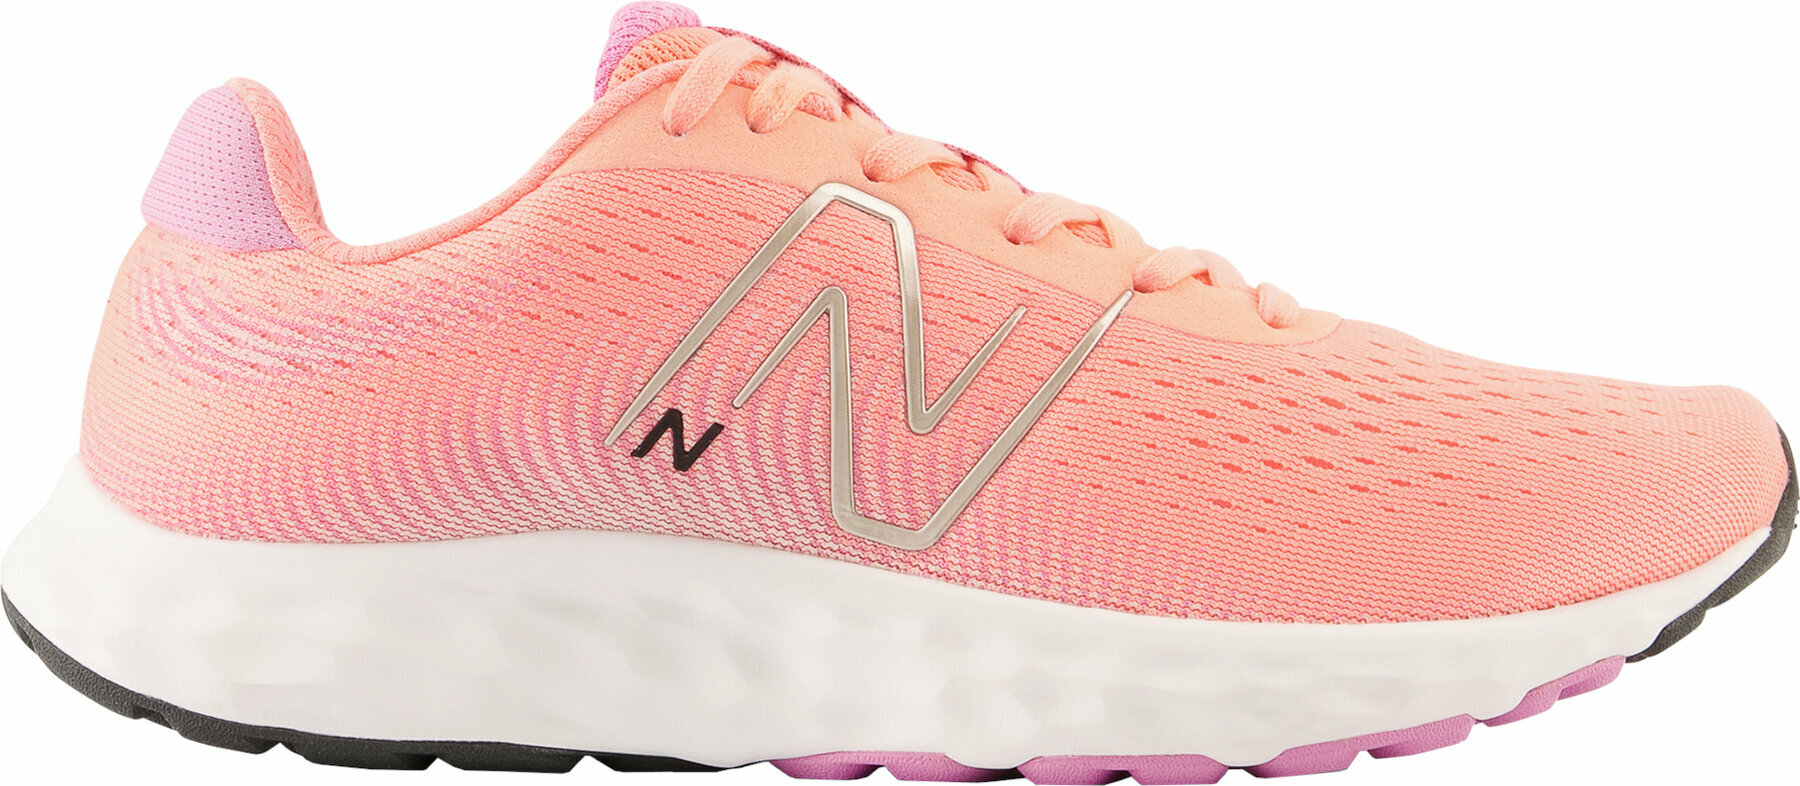 Chaussures de course sur route
 New Balance Womens W520 Pink 40 Chaussures de course sur route